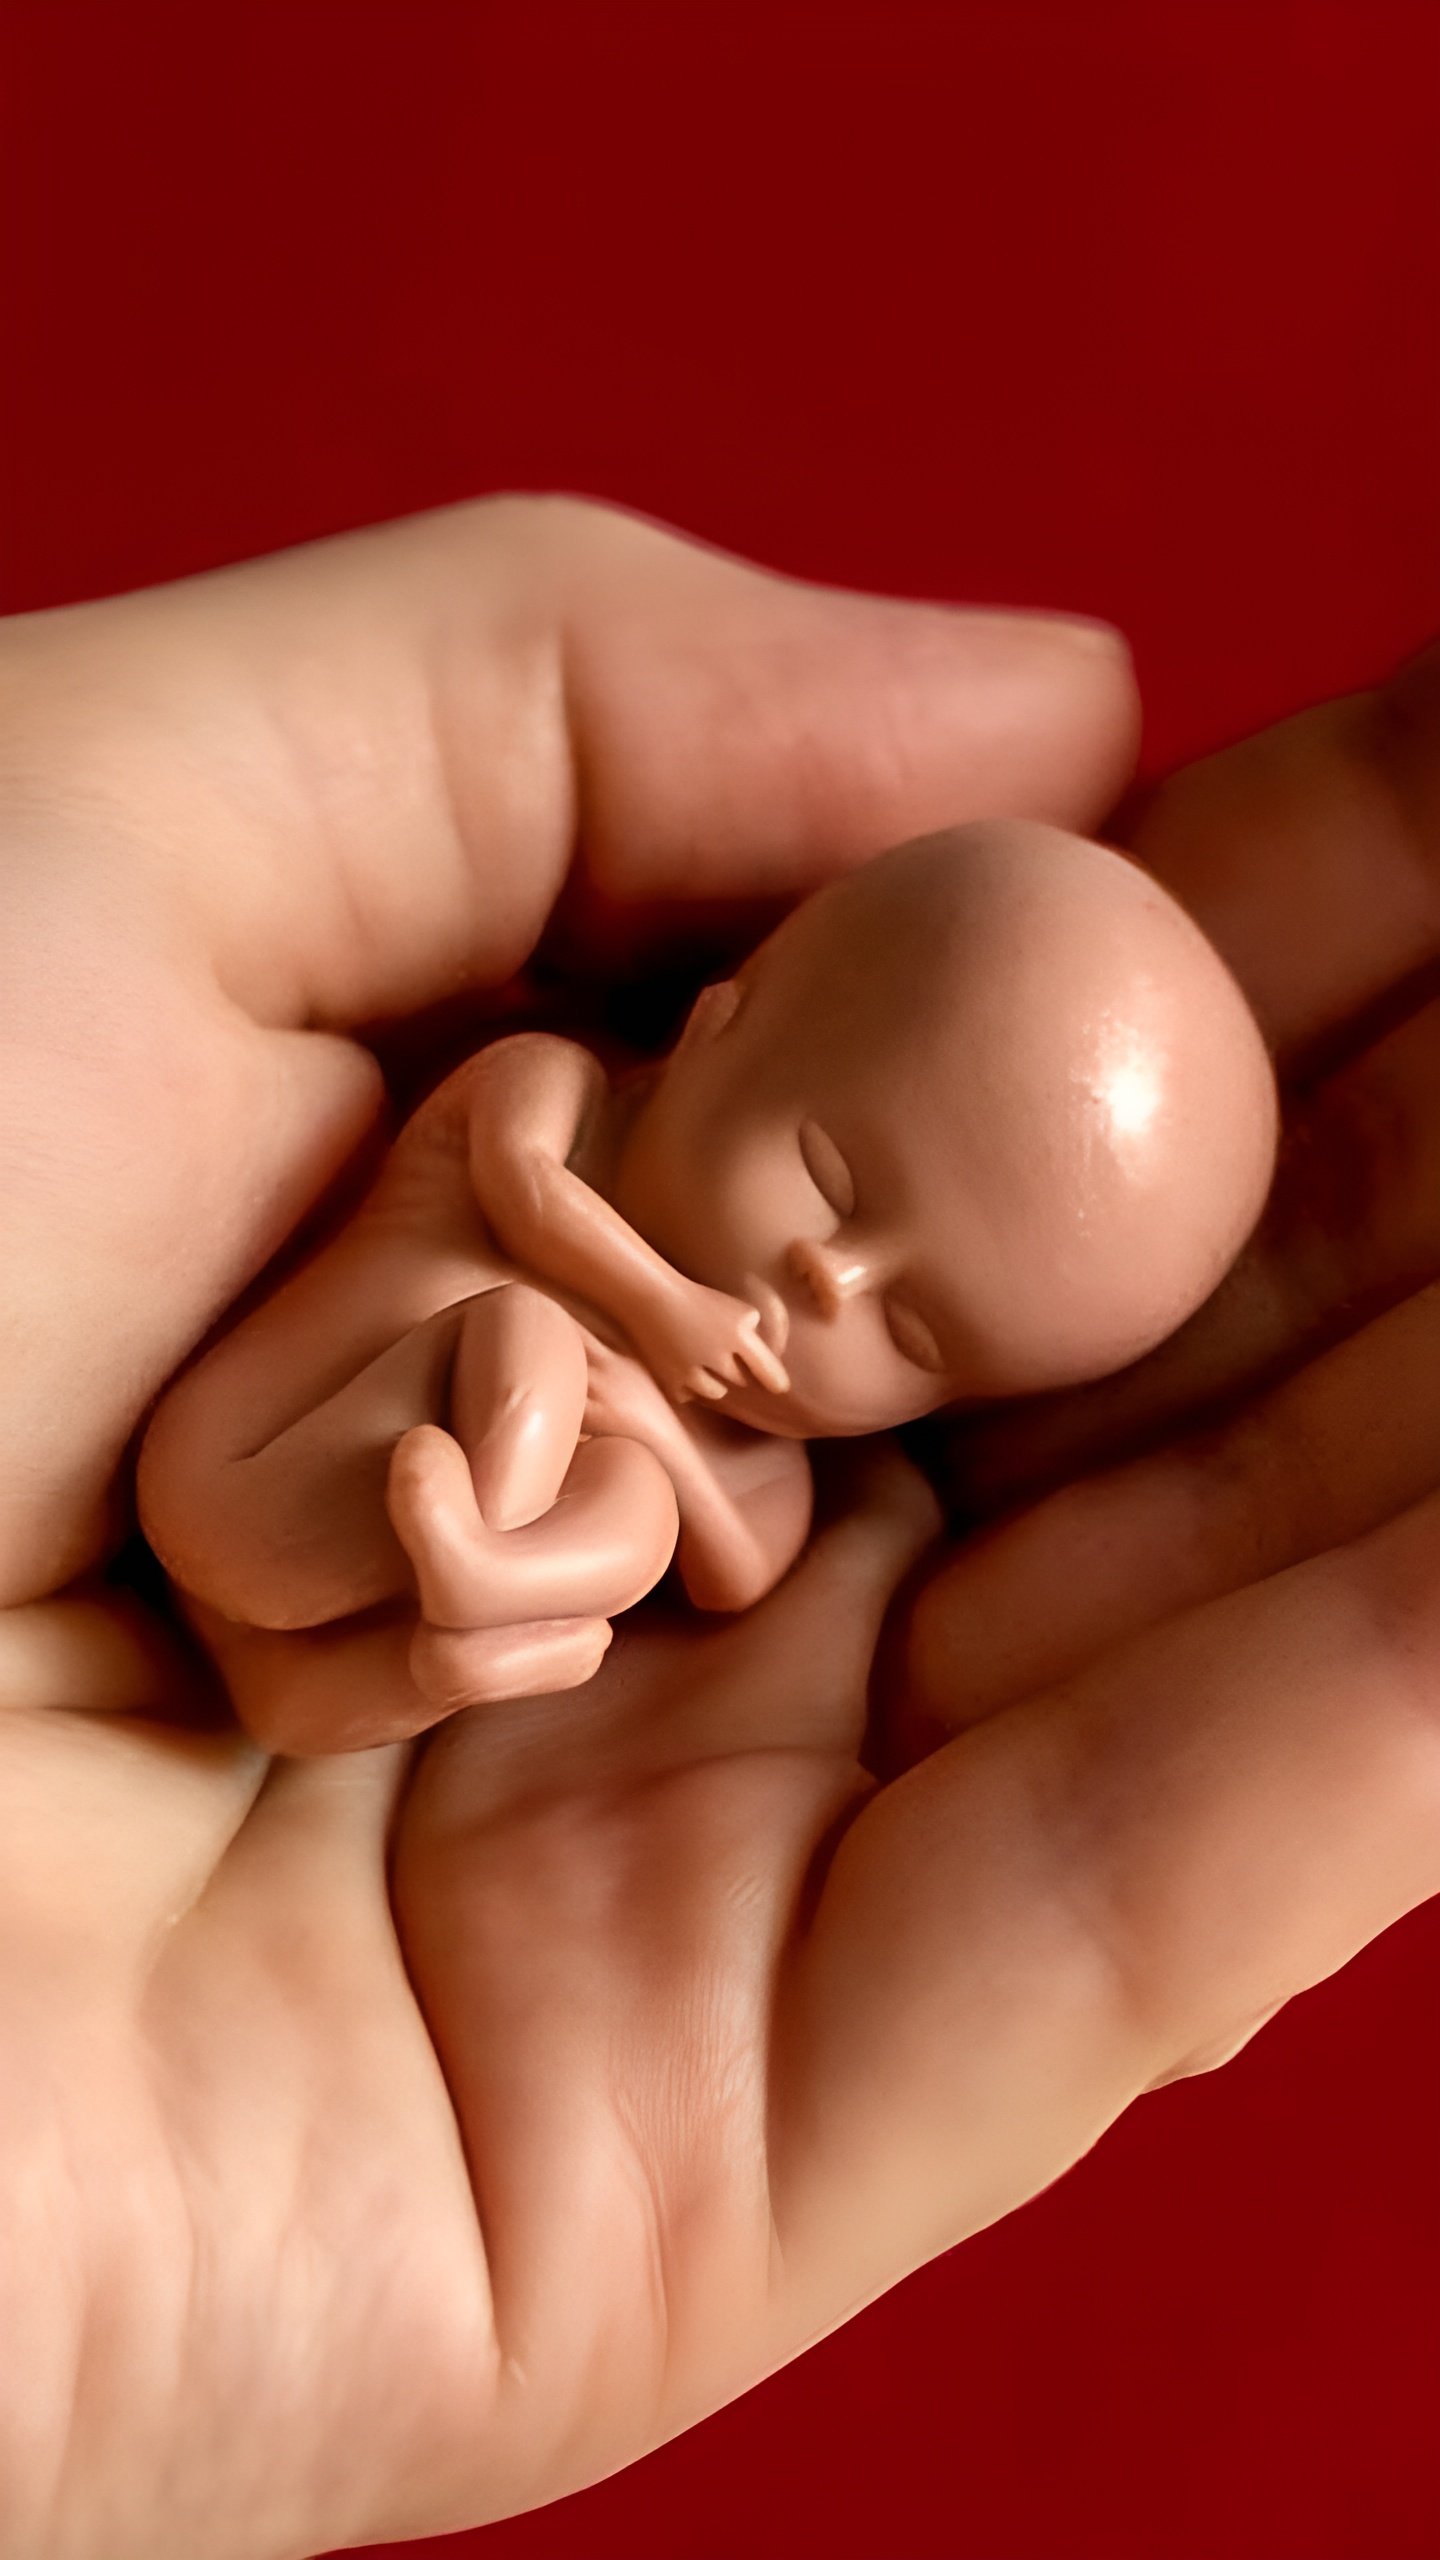 Право на охрану здоровья до рождения не запрещает аборты